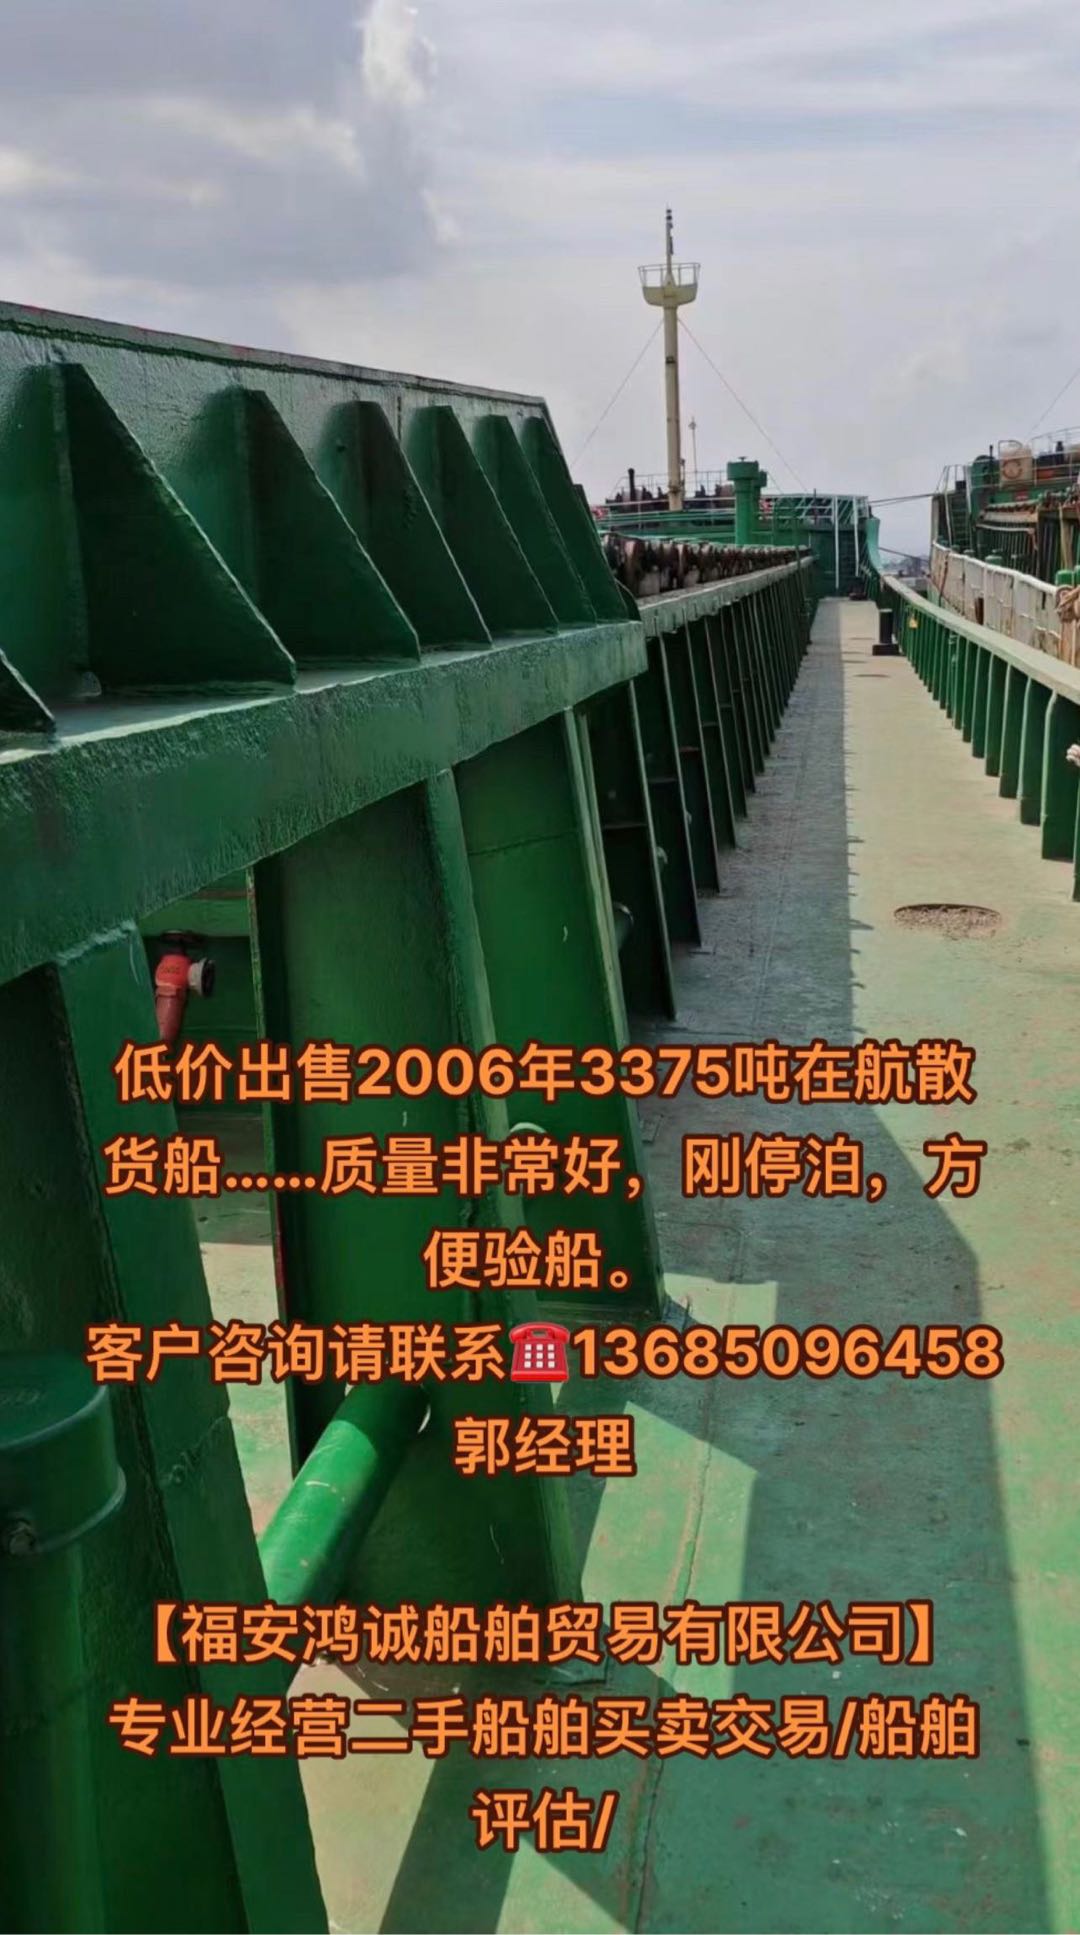 低价出售2006年3375吨在航散货船